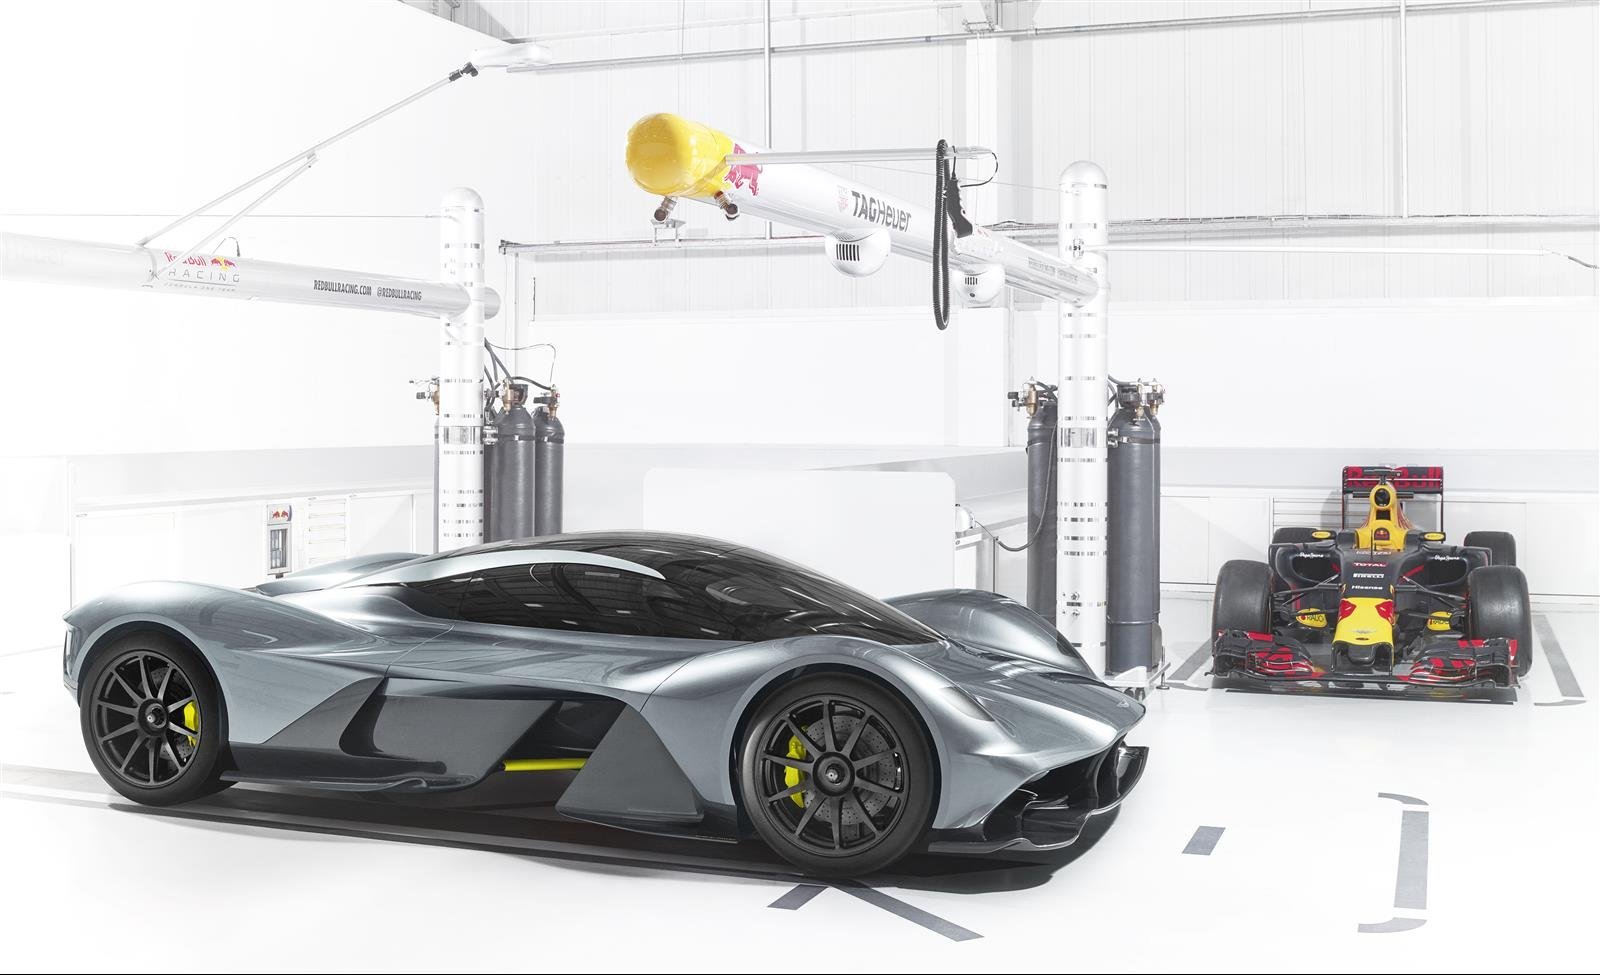 Valkyrie - společné dílo Aston Martinu a Red Bullu, na němž se podílel také konstruktér Adrian Newey